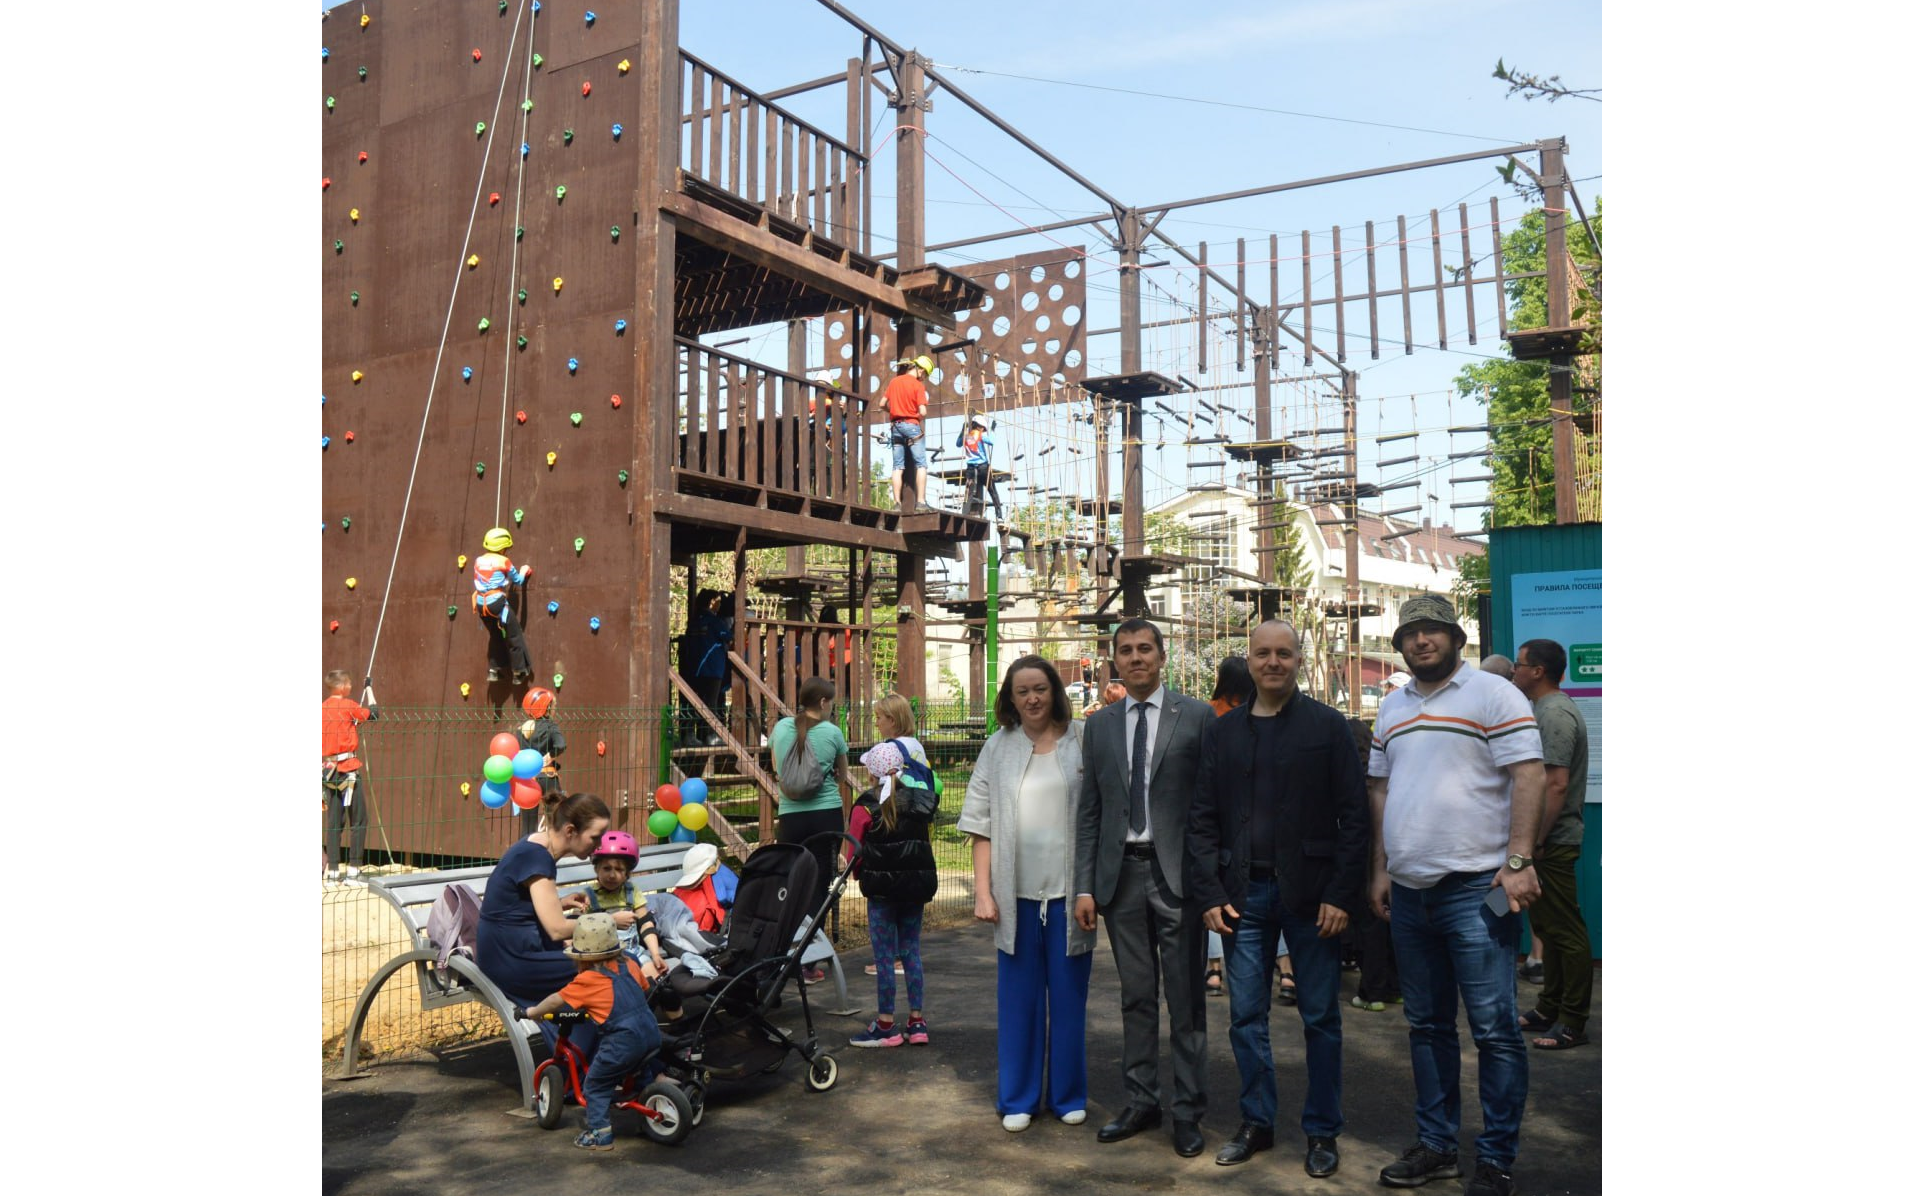 «Верёвочный парк» в Йошкар-Оле посетили больше 300 человек